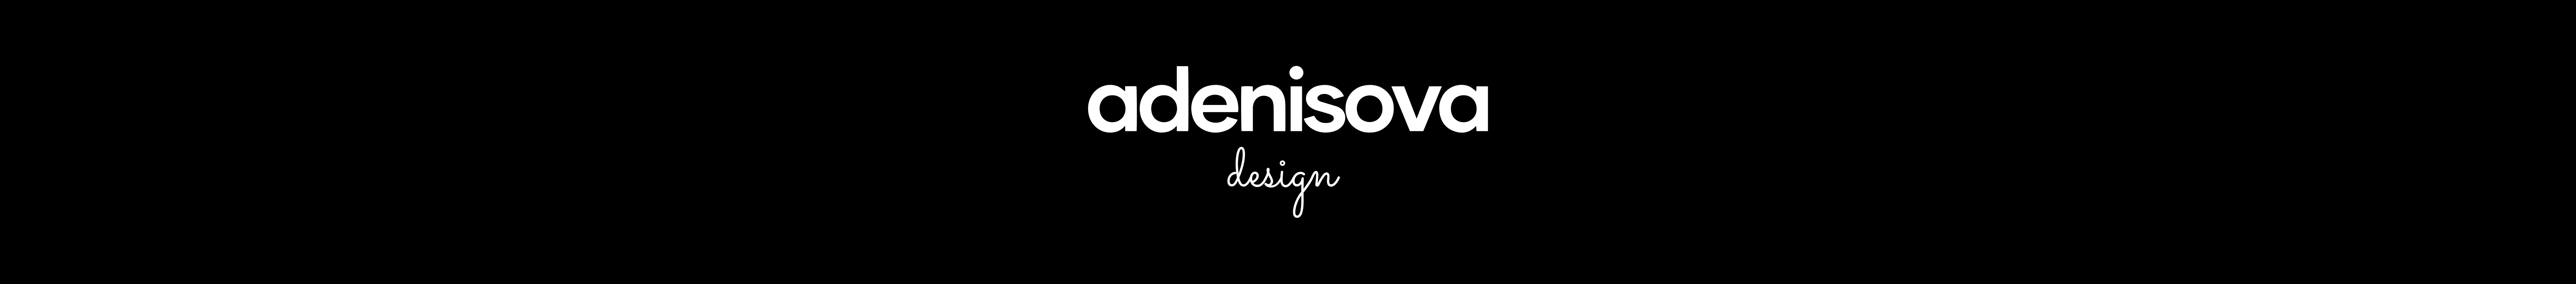 Anastasia Denisova's profile banner